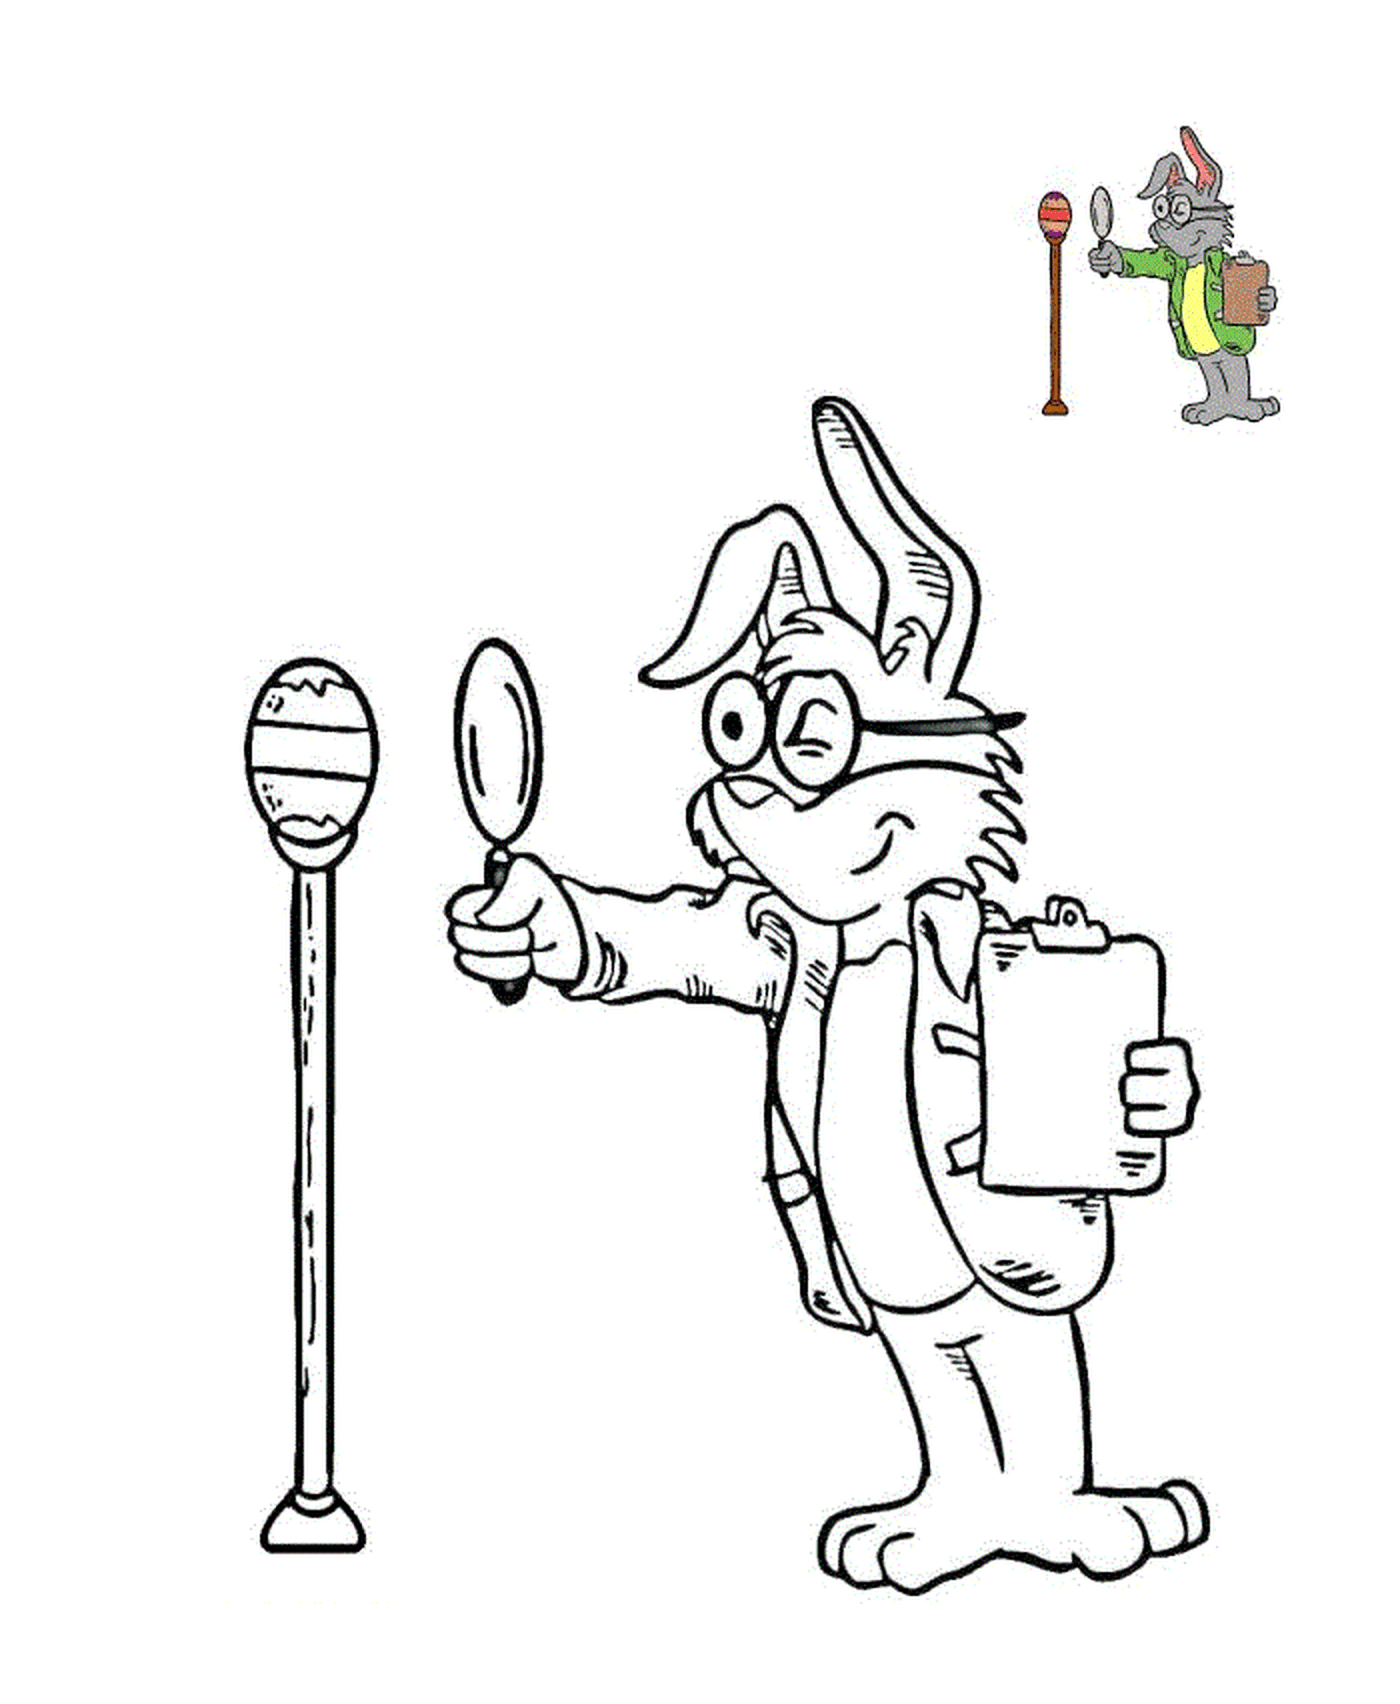  Inspector rabbit inspects Easter egg 